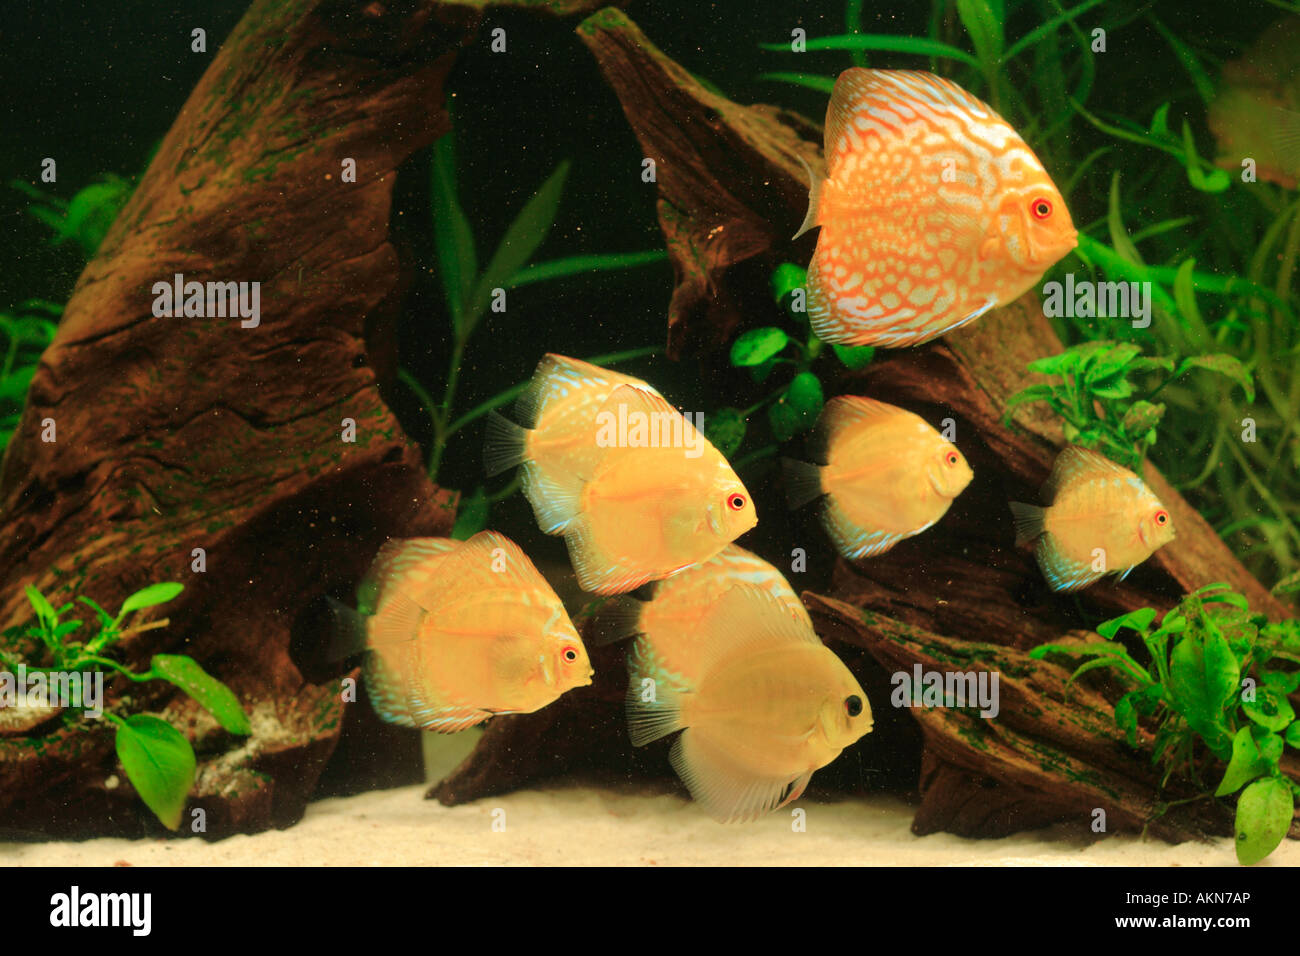 Discus fish - Symphysodon aequifasciatus Stock Photo